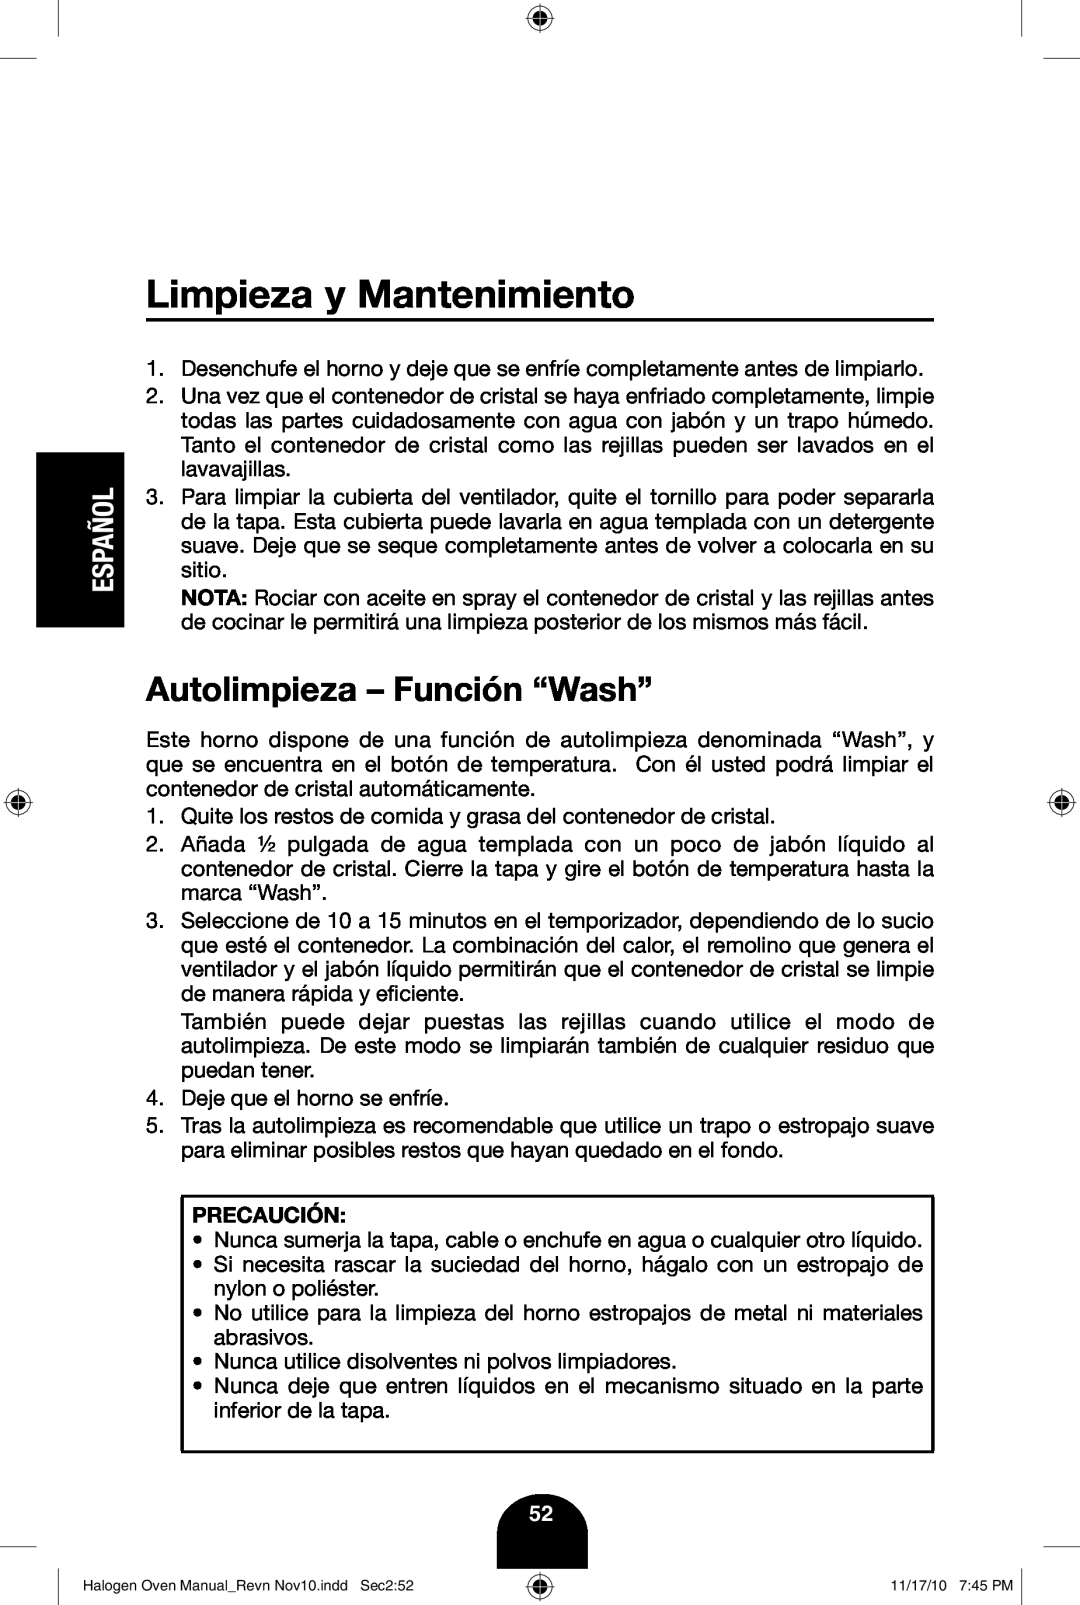 Fagor America 670040380 user manual Limpieza y Mantenimiento, Autolimpieza - Función “Wash”, Español 